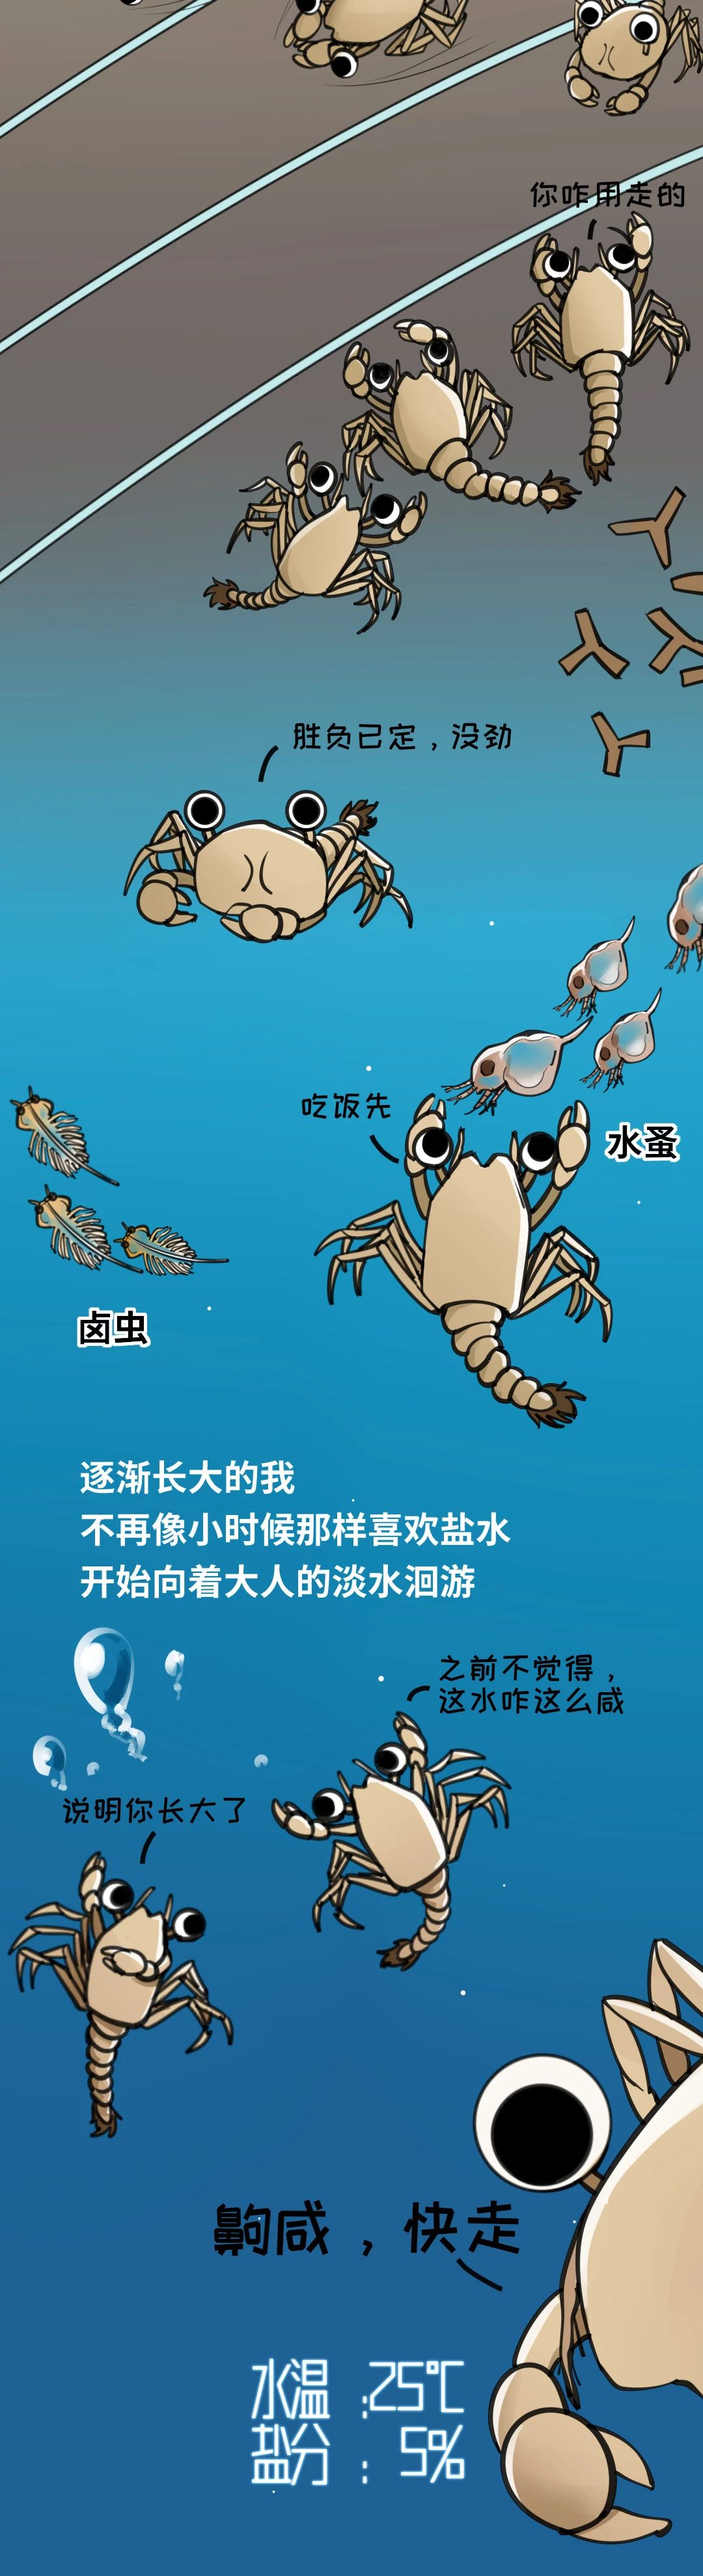 大闸蟹成长图009